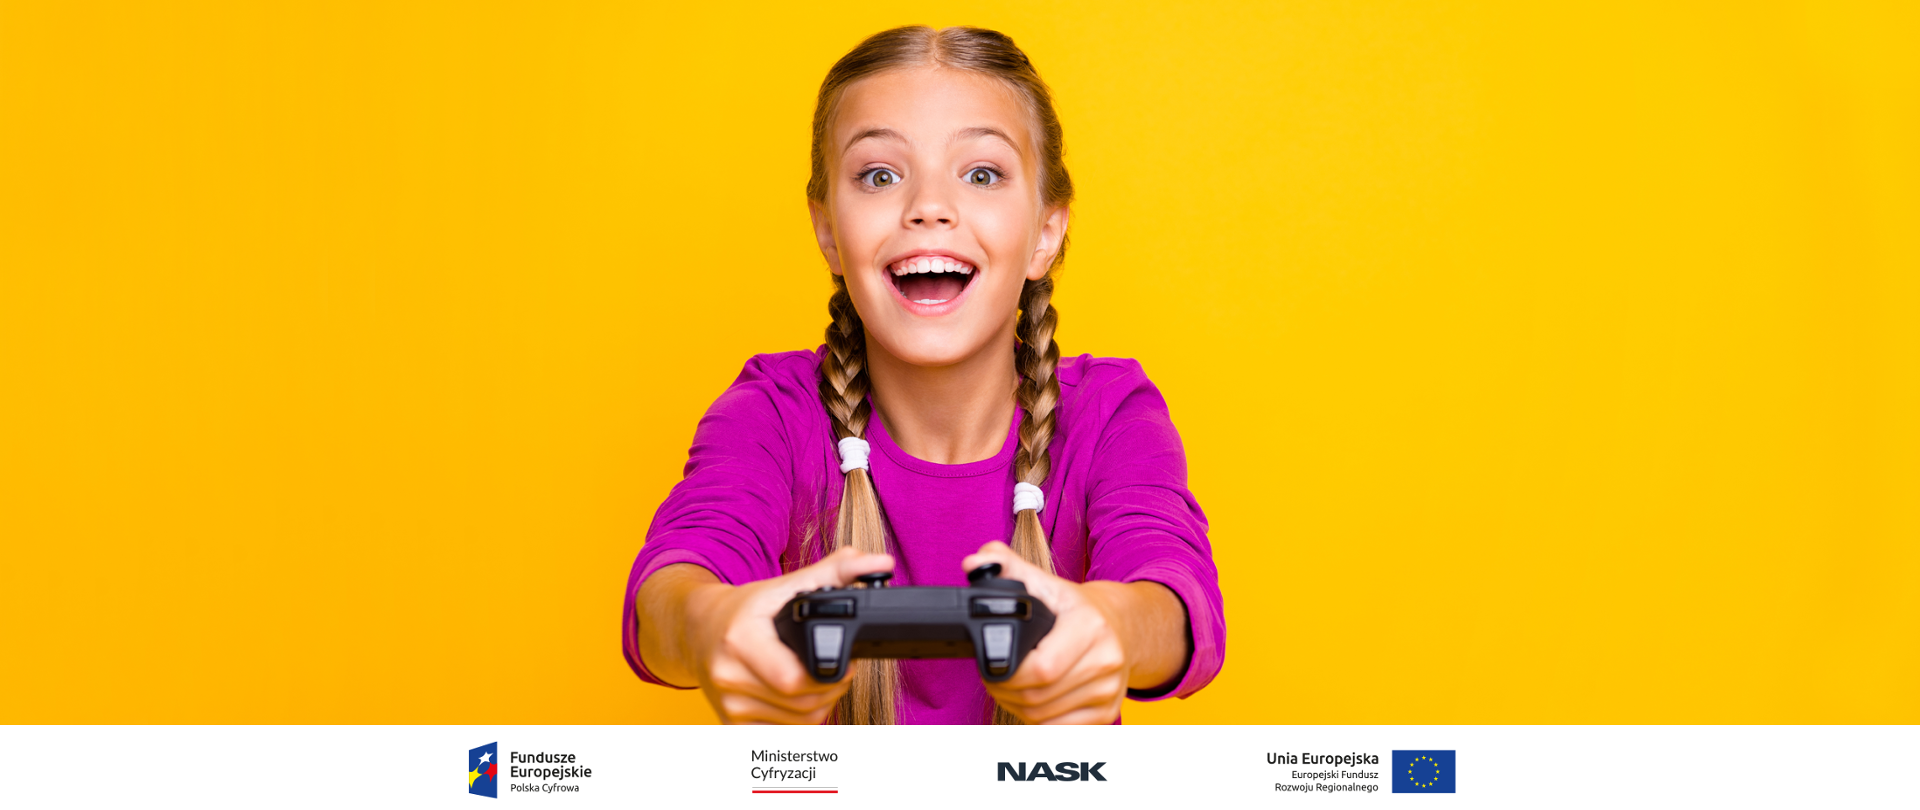 Grafika ze zdjęciem przedstawiającym dziewczynkę z joystickiem do gry w dłoniach. Żółte tło, na dole pasek z logotypami: Fundusze Europejskie, Ministerstwo Cyfryzacji, NASK, Unia Europejska.